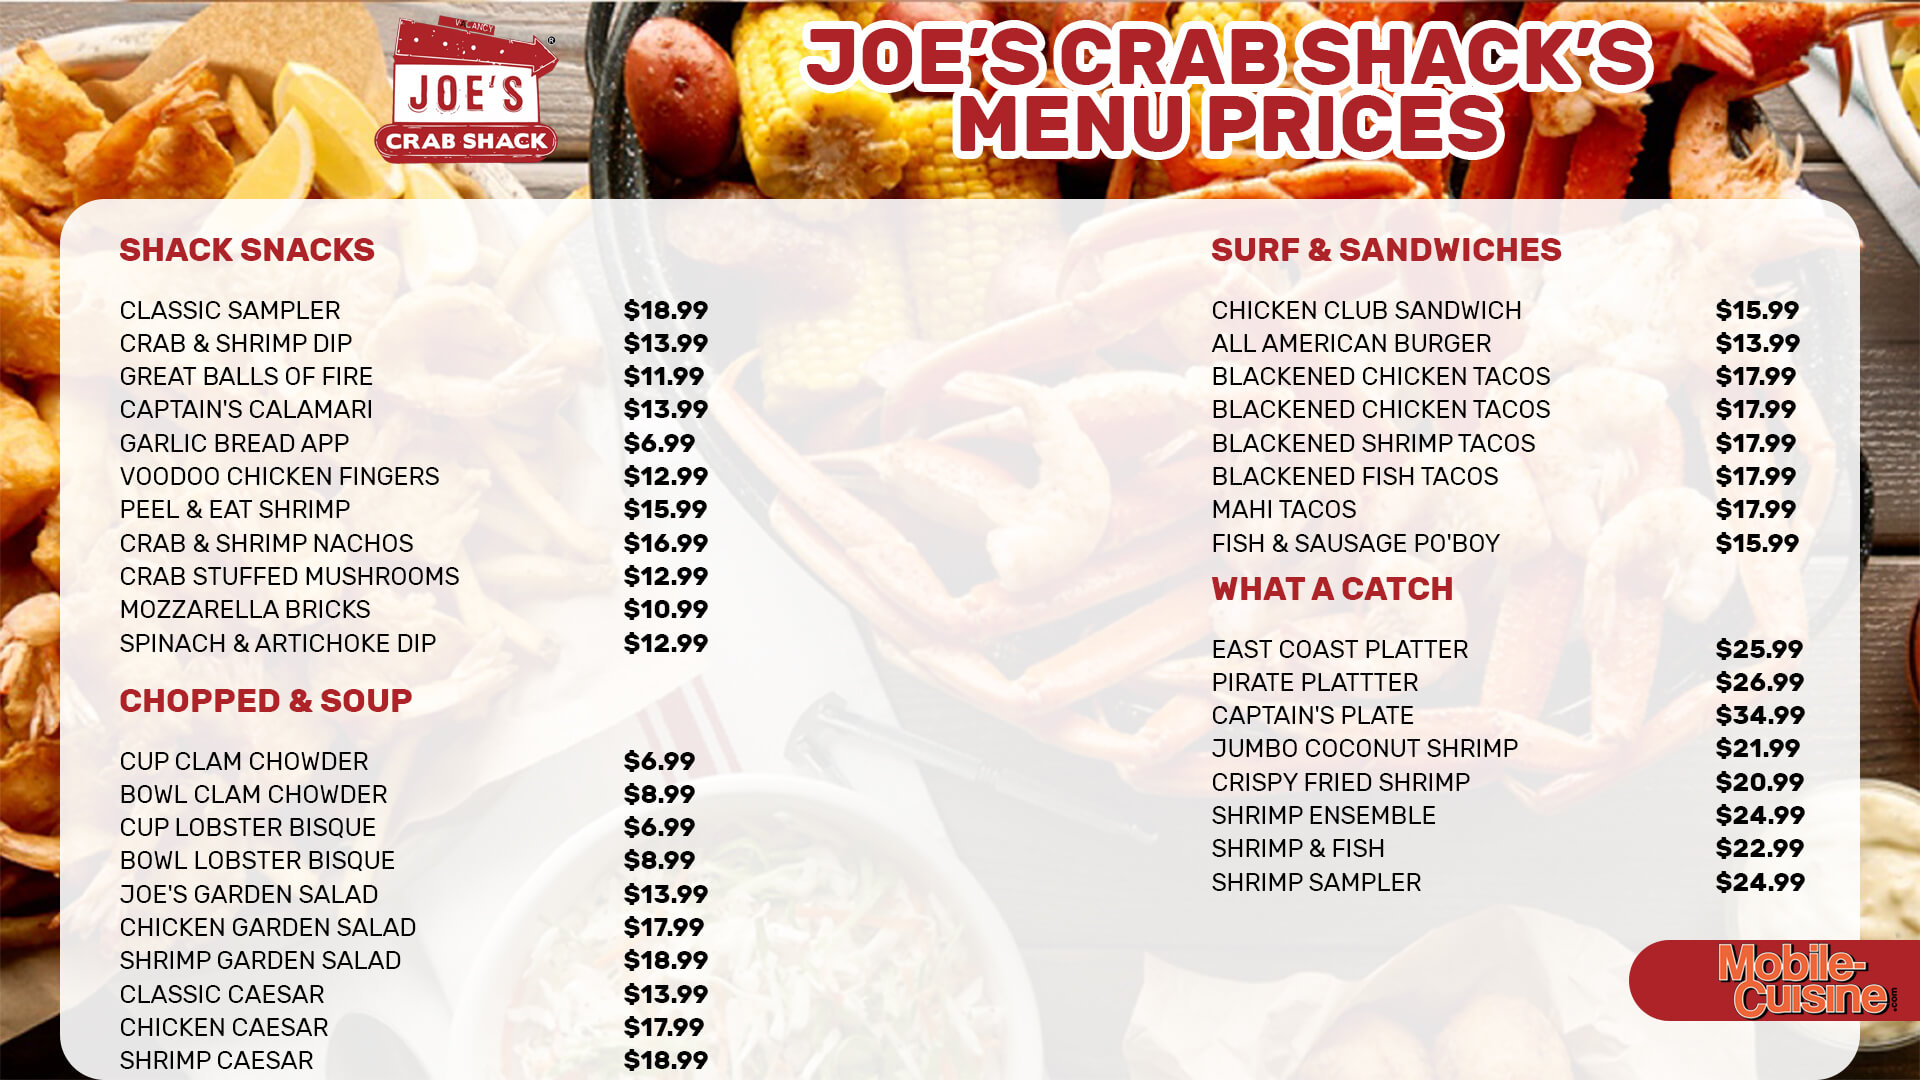 Joe’s Crab Shack menu prices